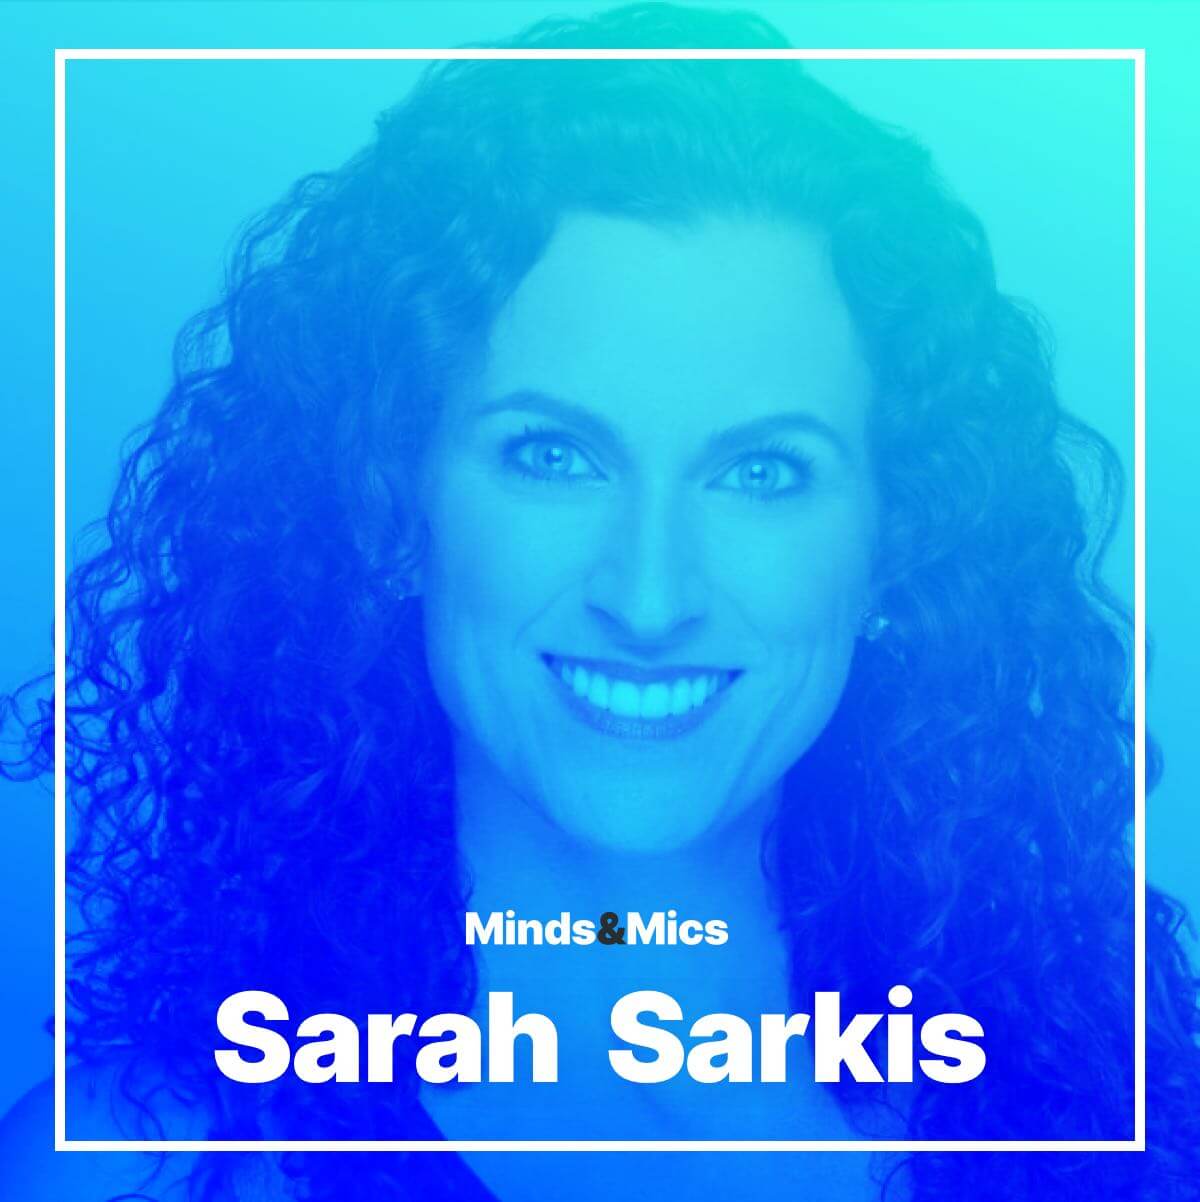 Sarah Sarkis Photo Minds and Mics Wignall